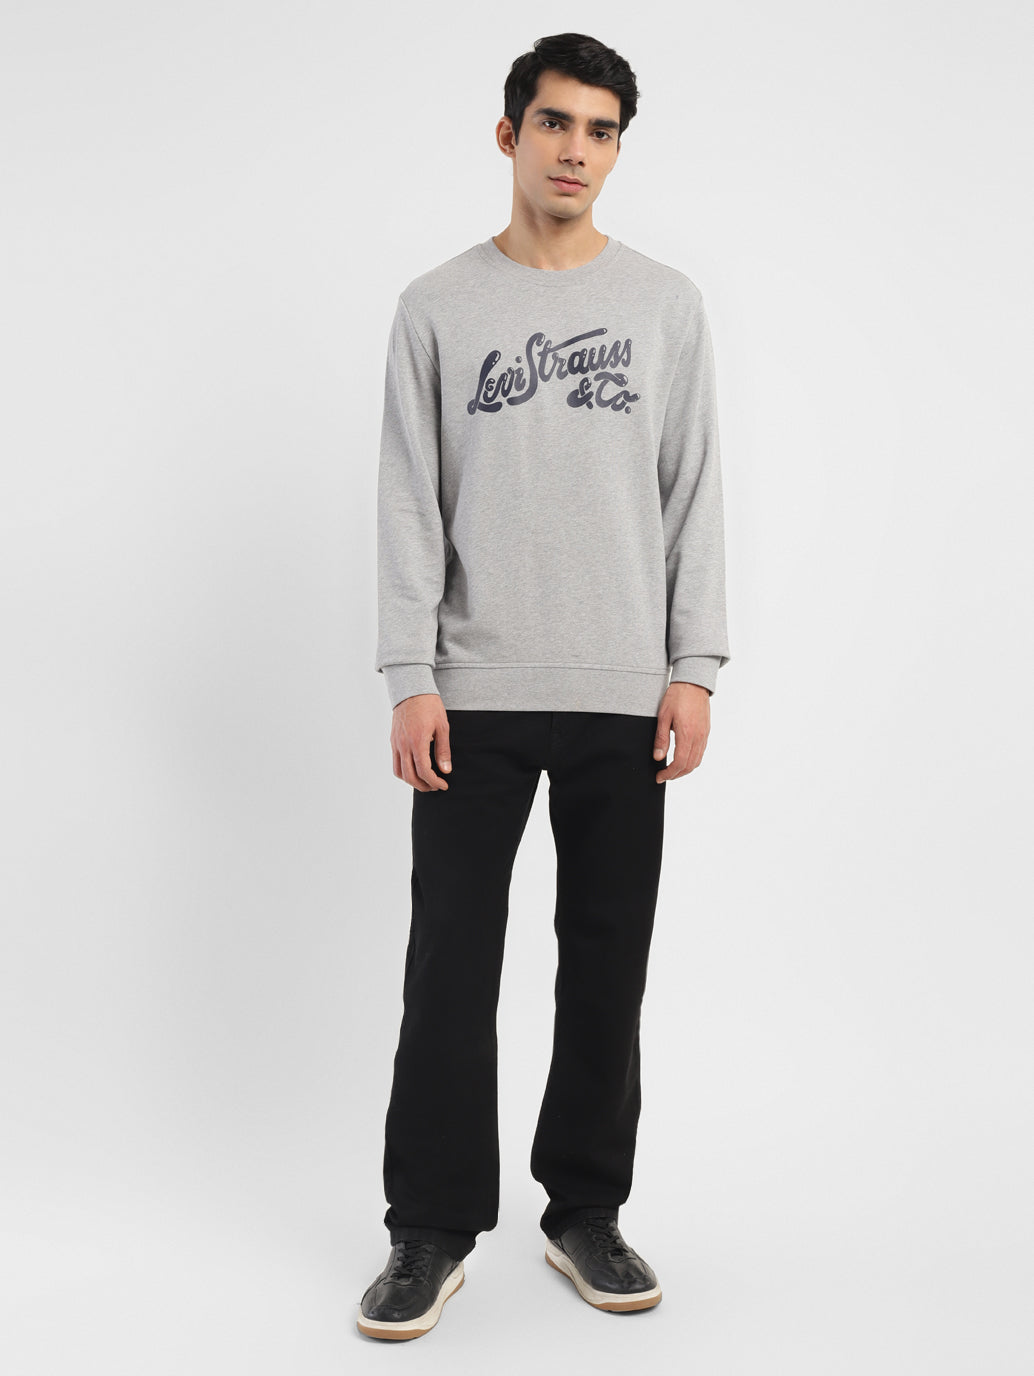 Bundle & SAVE on Signature Sweatshirts & Joggers – Vital Life Apparel